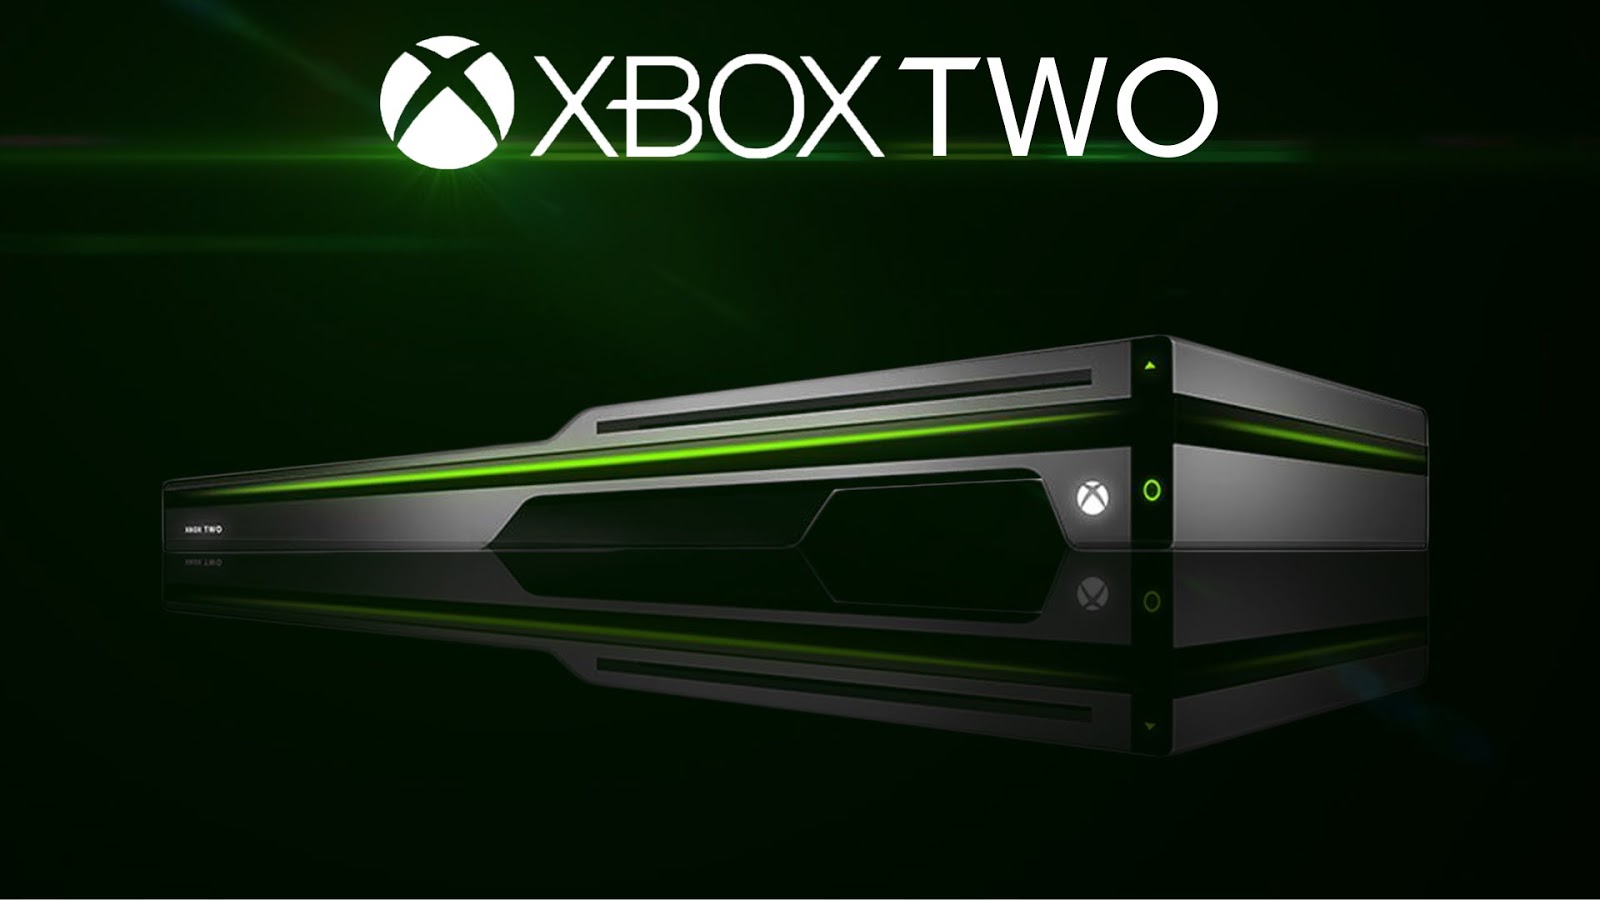 Xbox series x дата выхода в россии. Хбокс оне 2021. Хбокс 2. Xbox two и ps5. Xbox 2021.